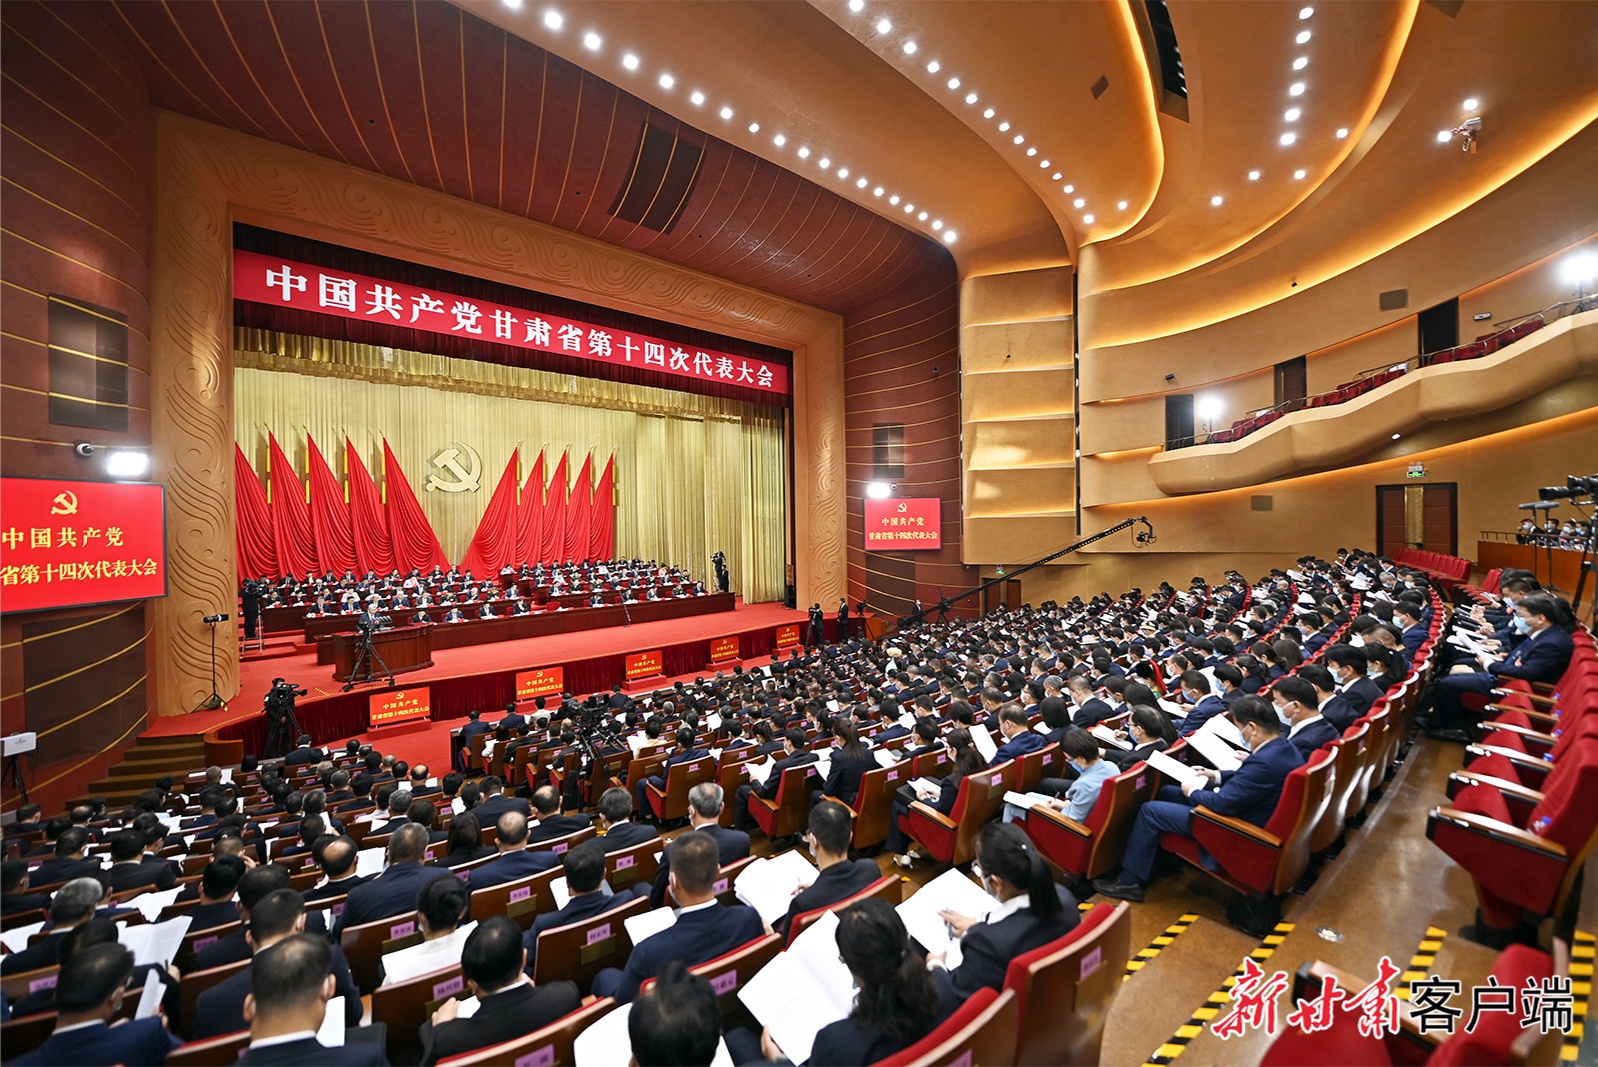 中国共产党甘肃省第十四次代表大会隆重开幕尹弘代表中国共产党甘肃省